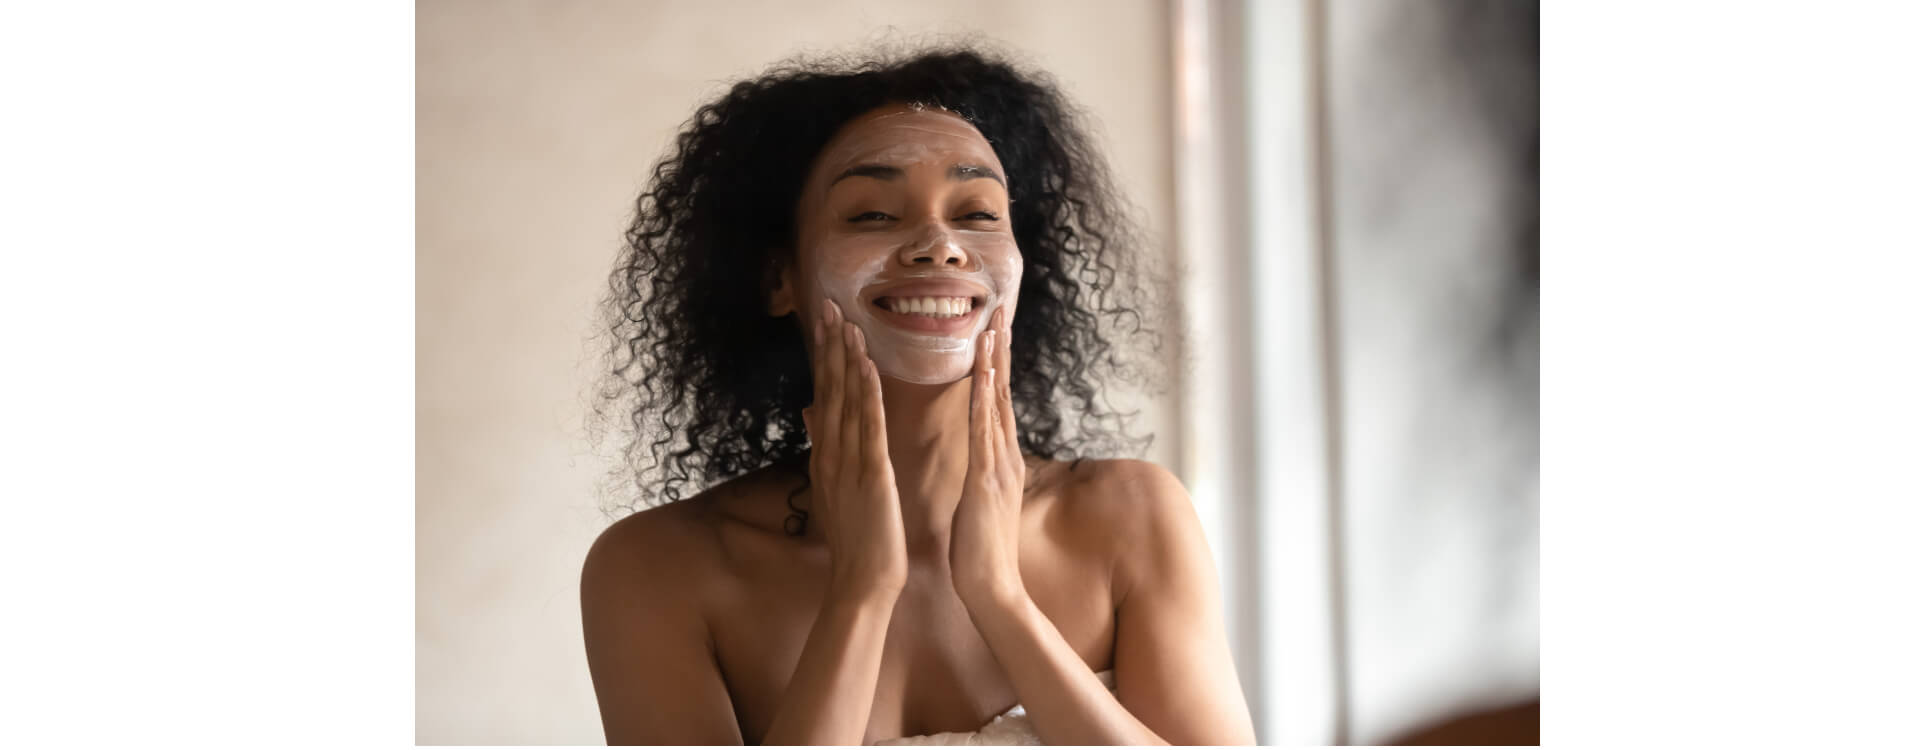 Lavare sempre il viso delicatamente: una donna applica del sapone sul viso per detegerlo